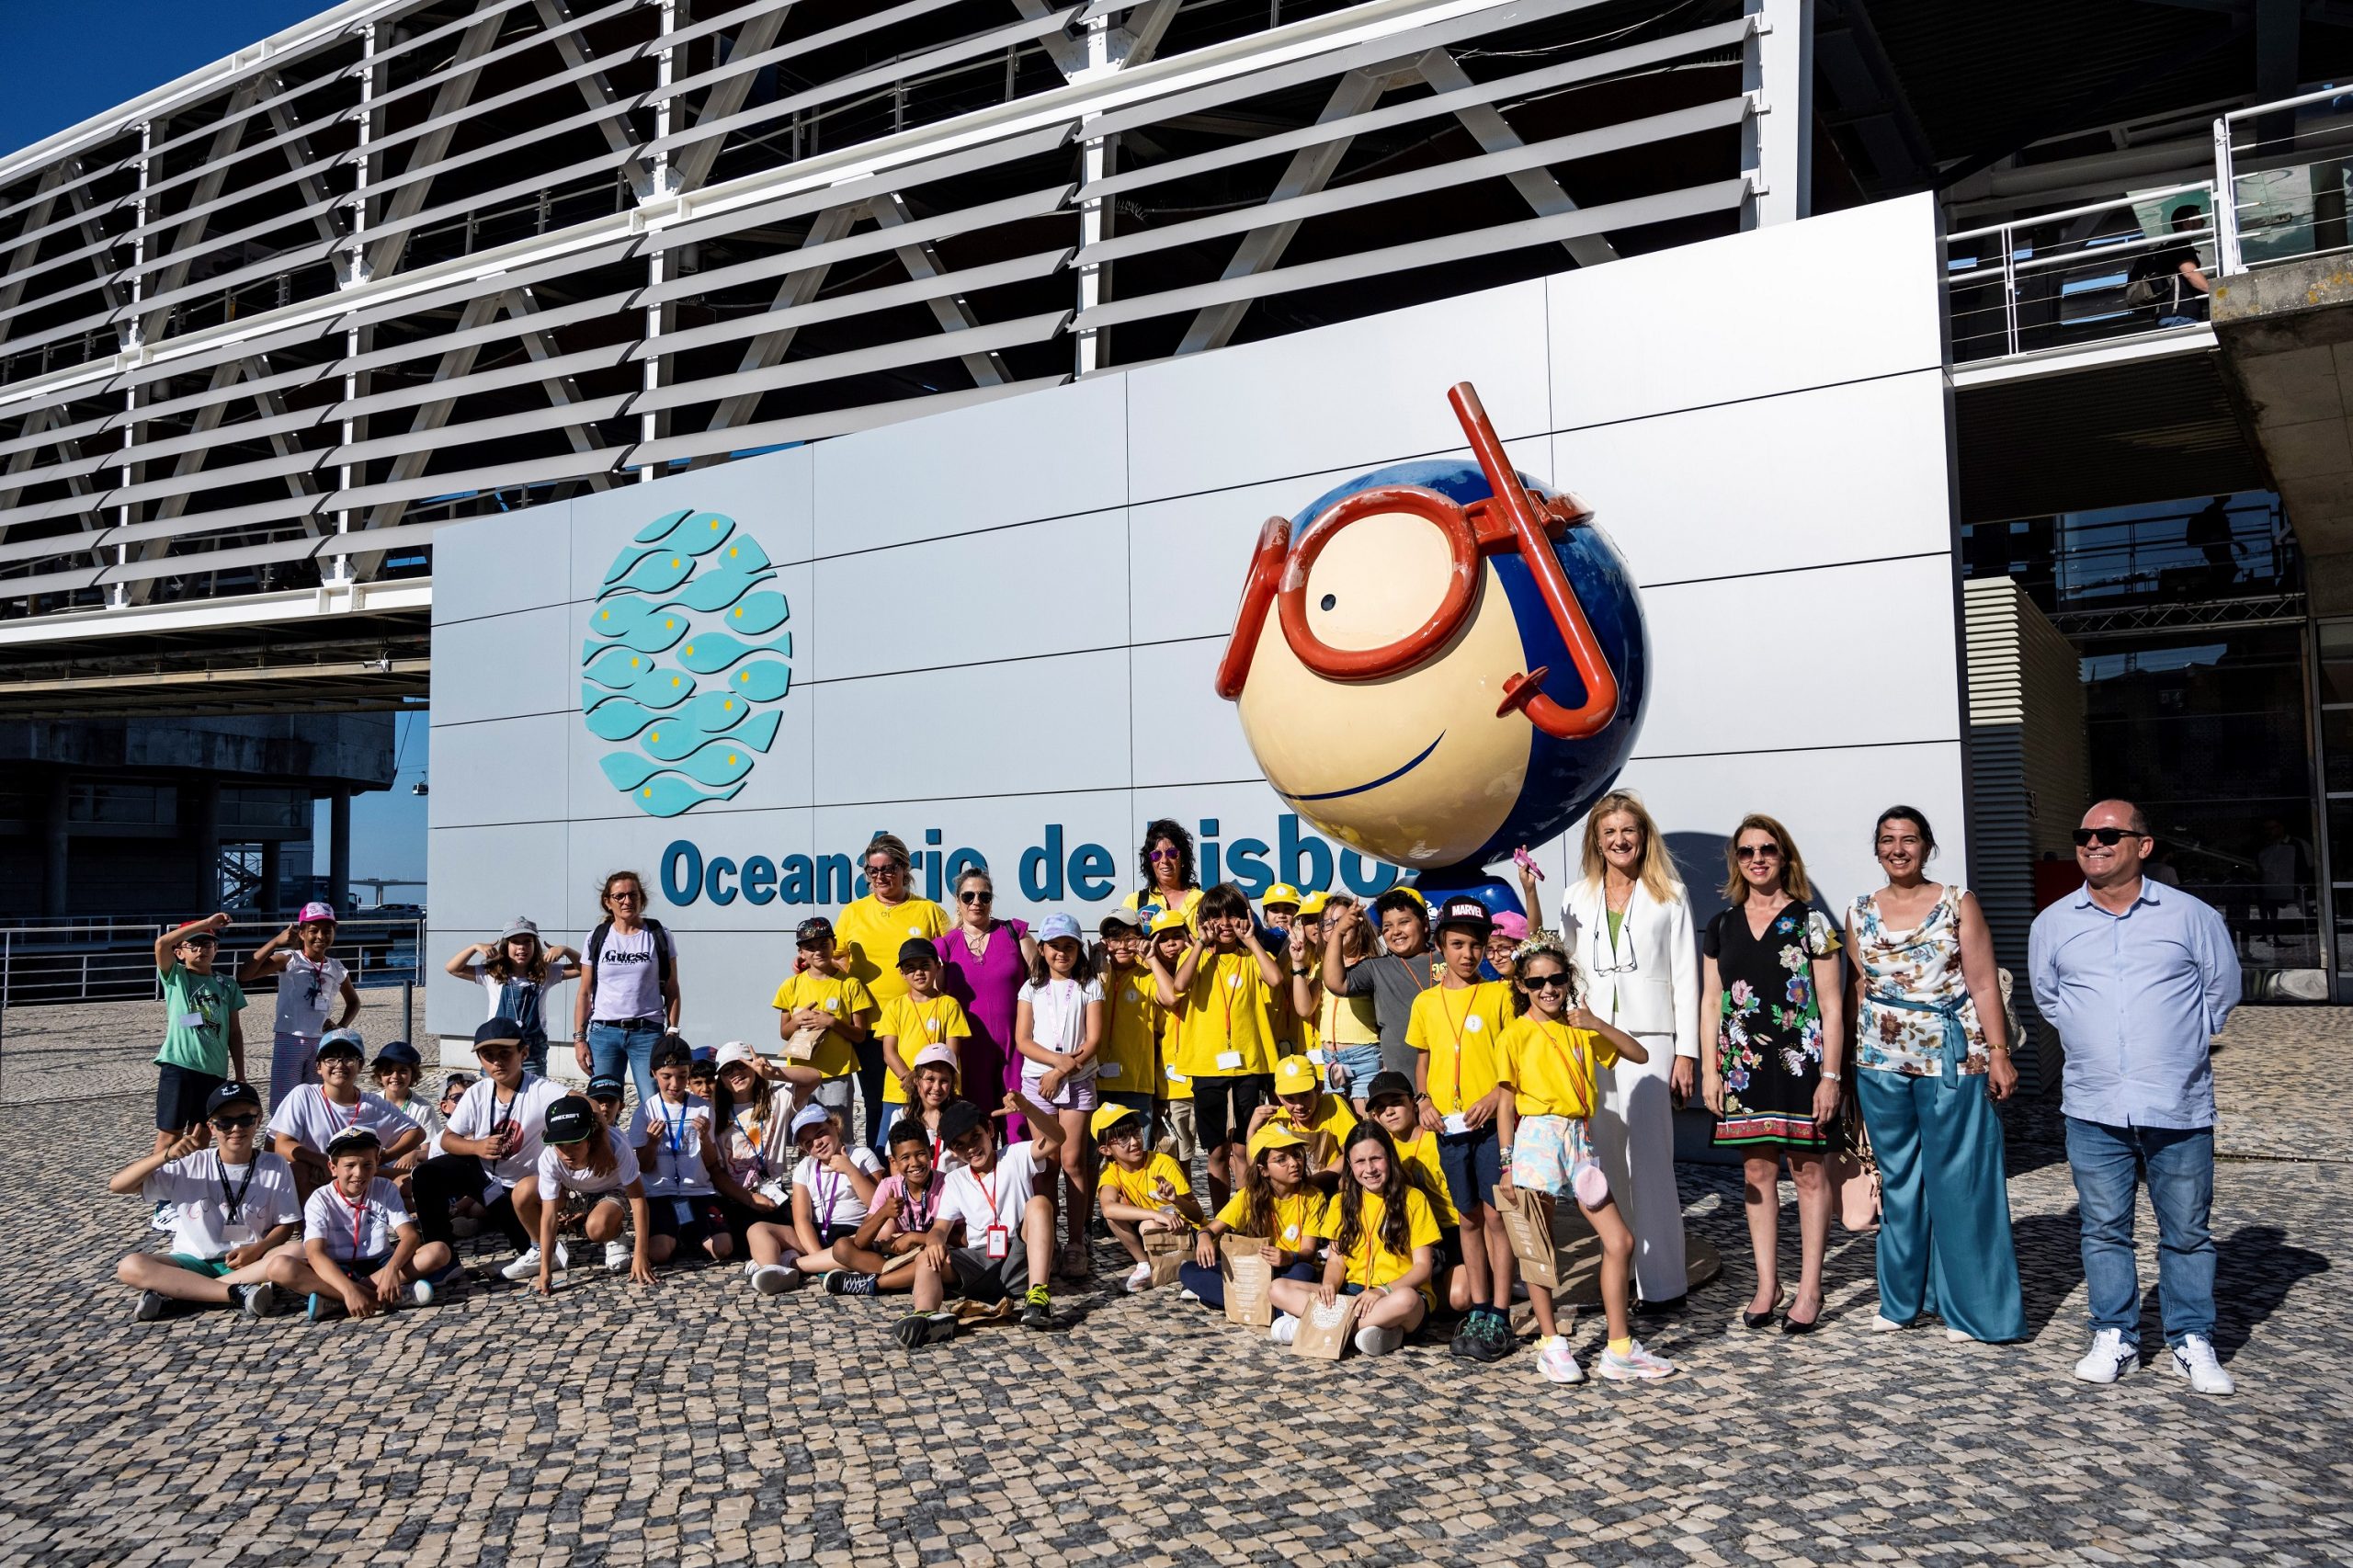 Visita dos alunos do ensino básico de sines ao Oceanário, apoiada pela aicep Global Parques